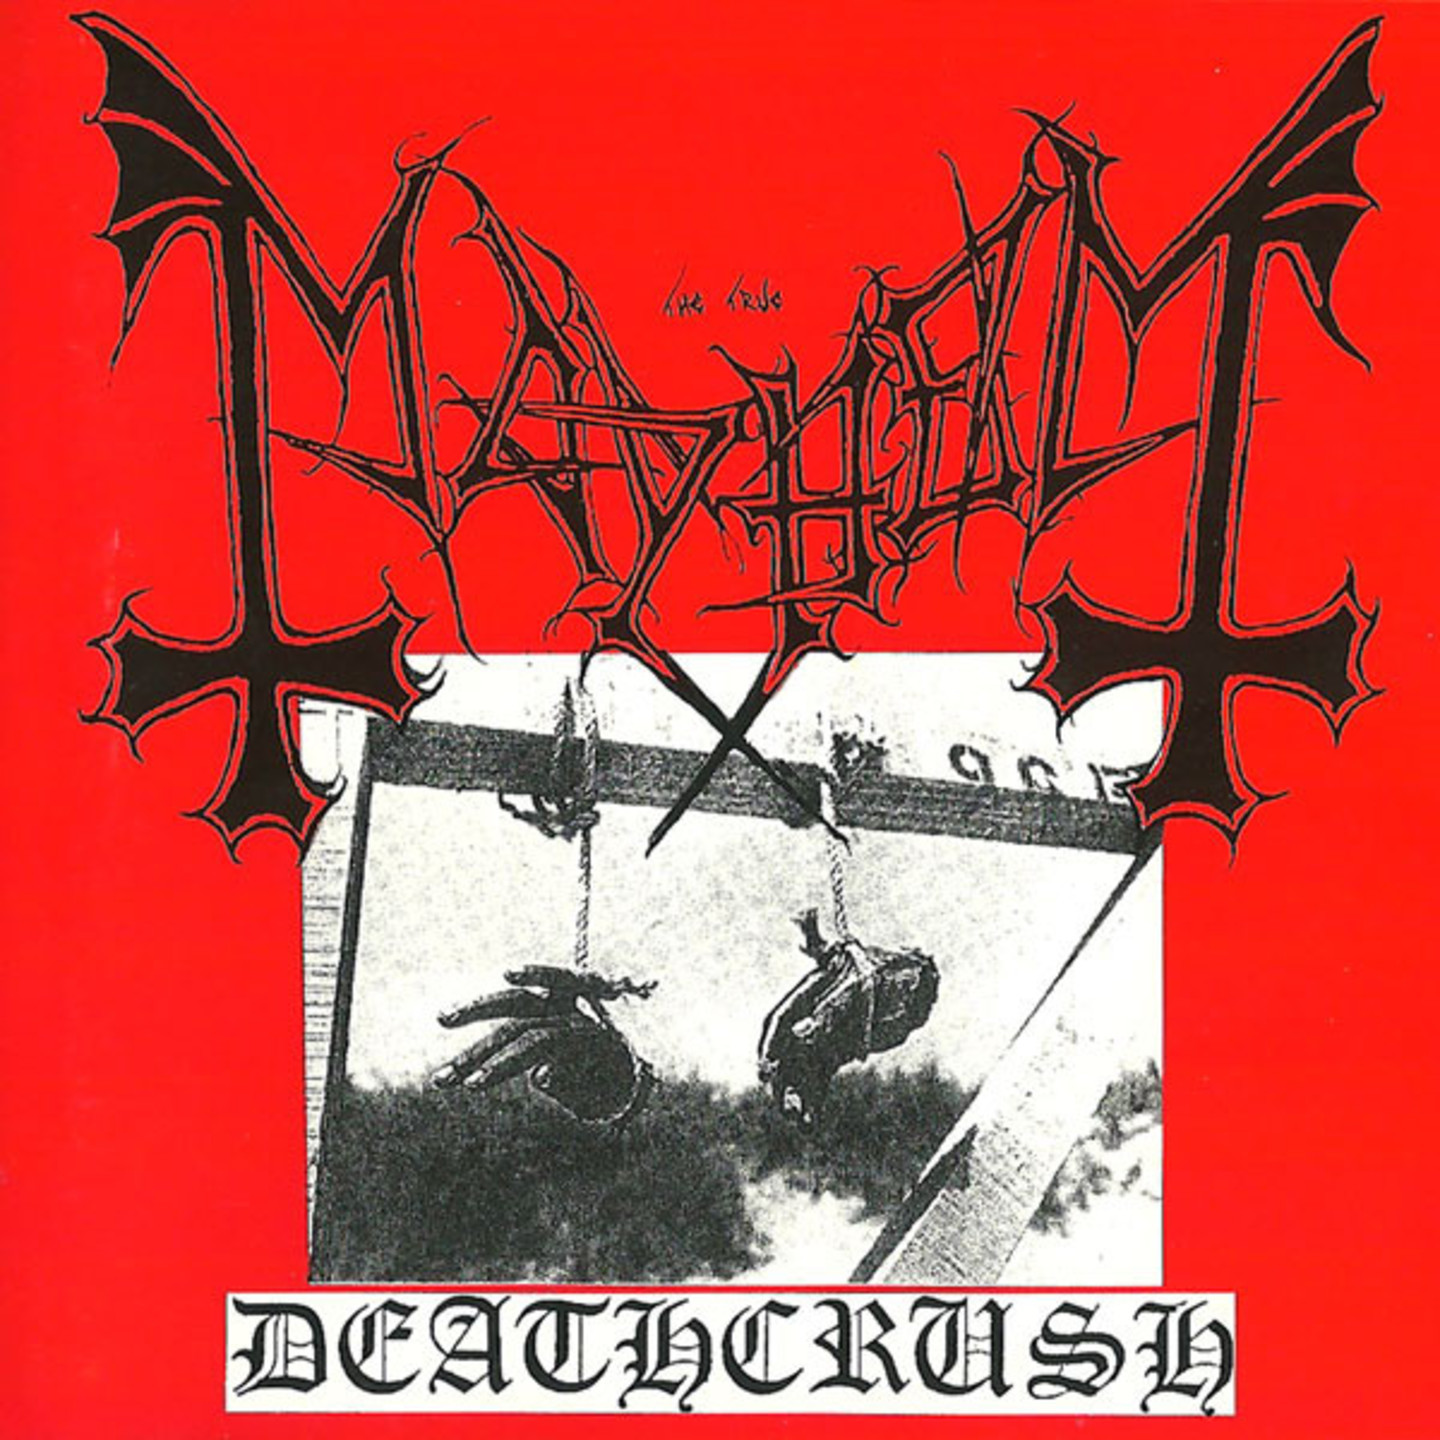 MAYHEM - Deathcrush LP Colour vinyl